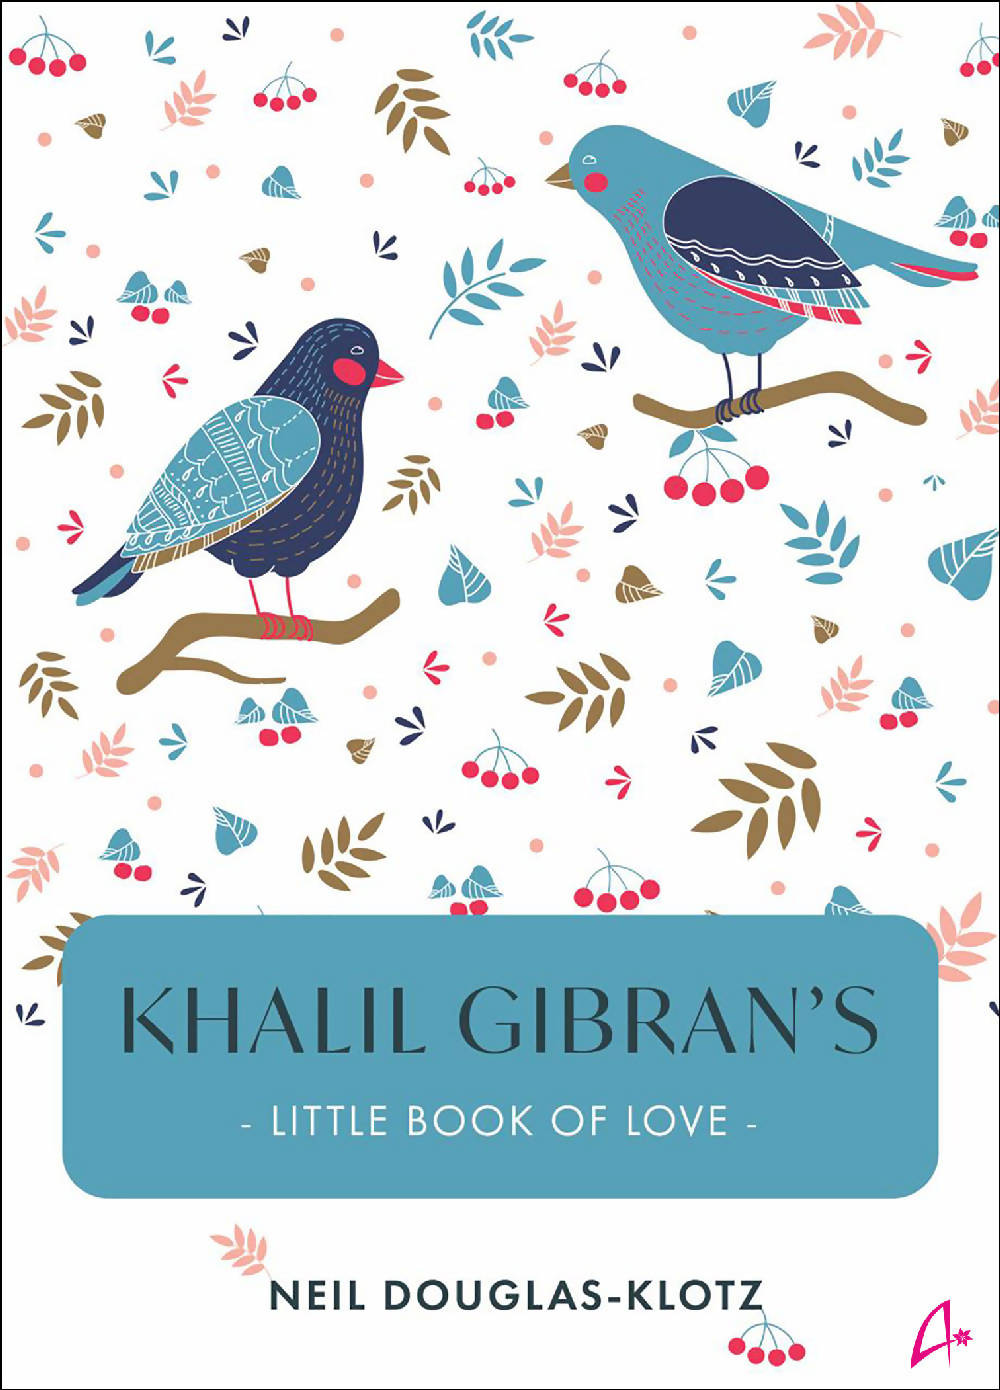 Khalil Gibran’s Little Book of Love